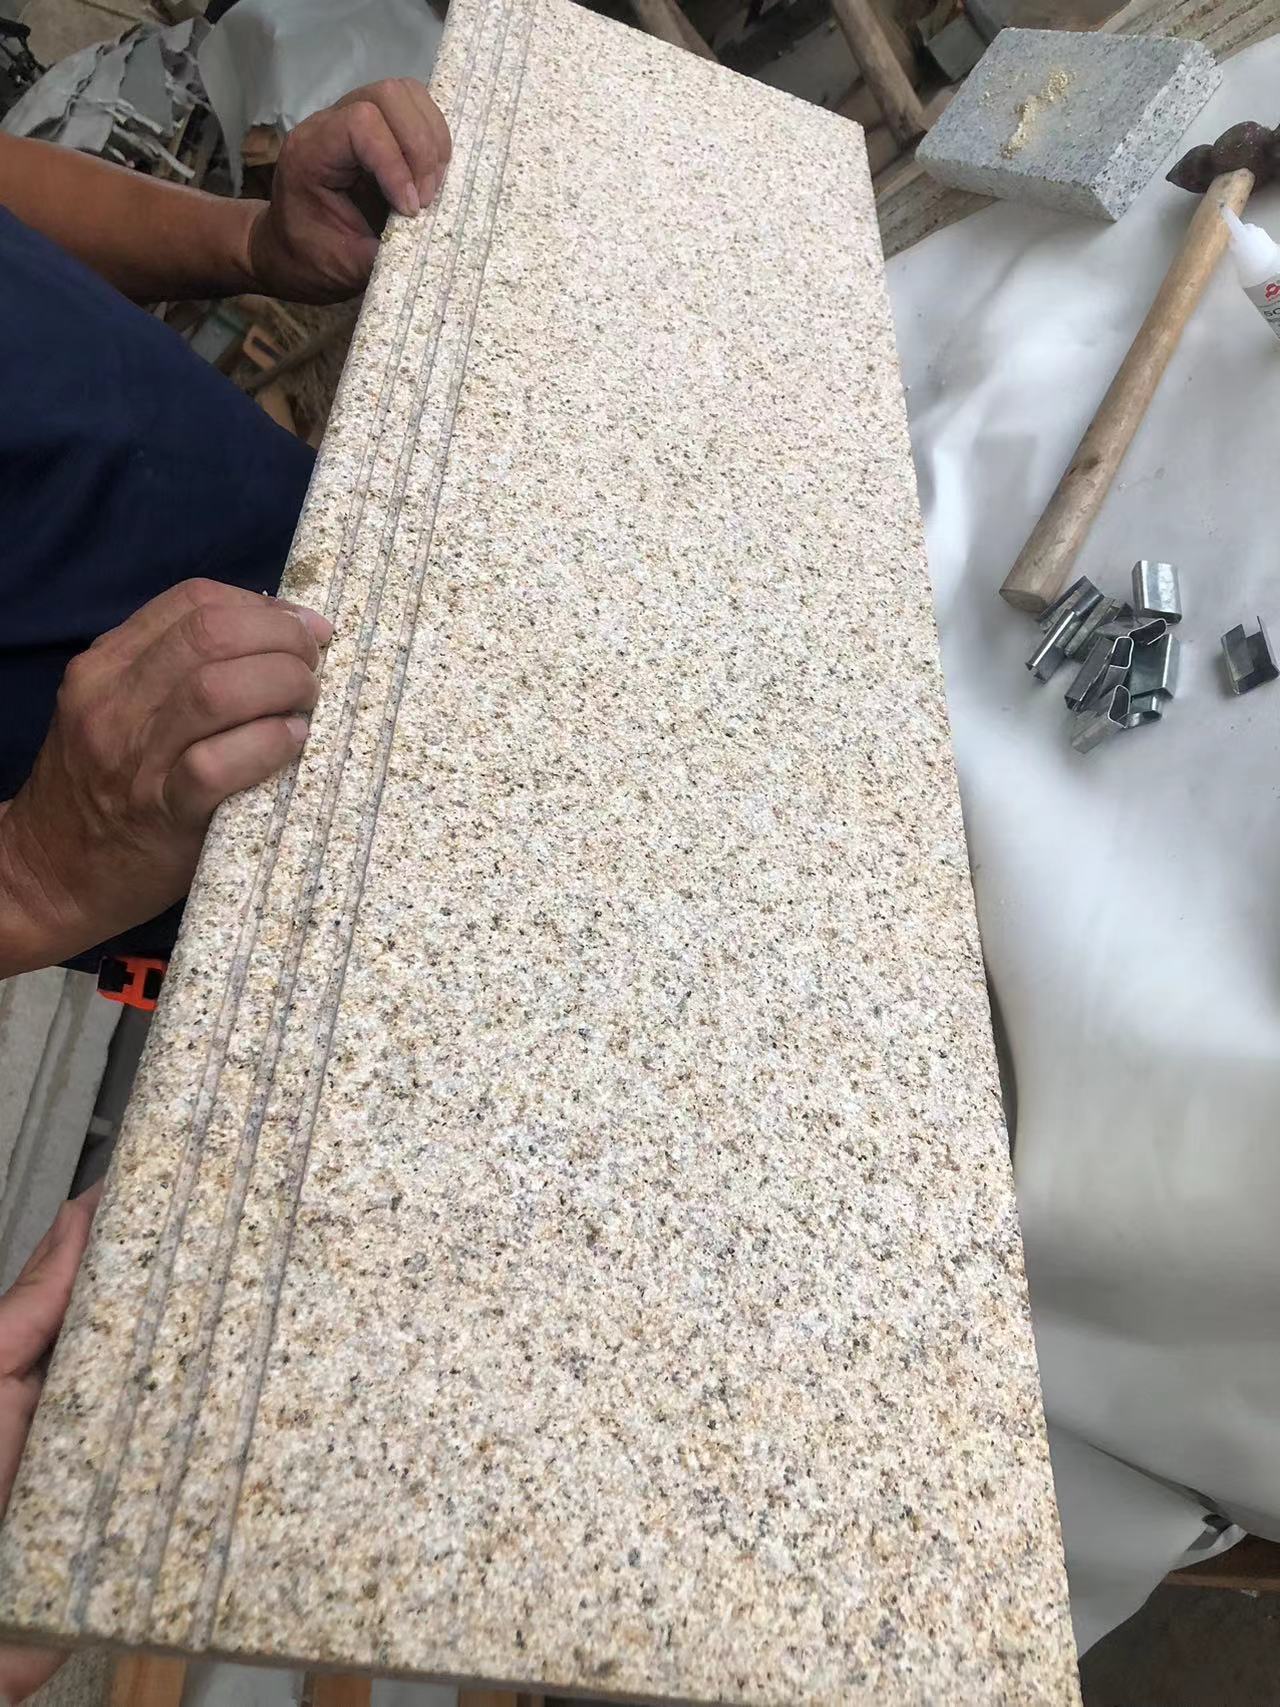 Chinese granite G682 bushhammer steps